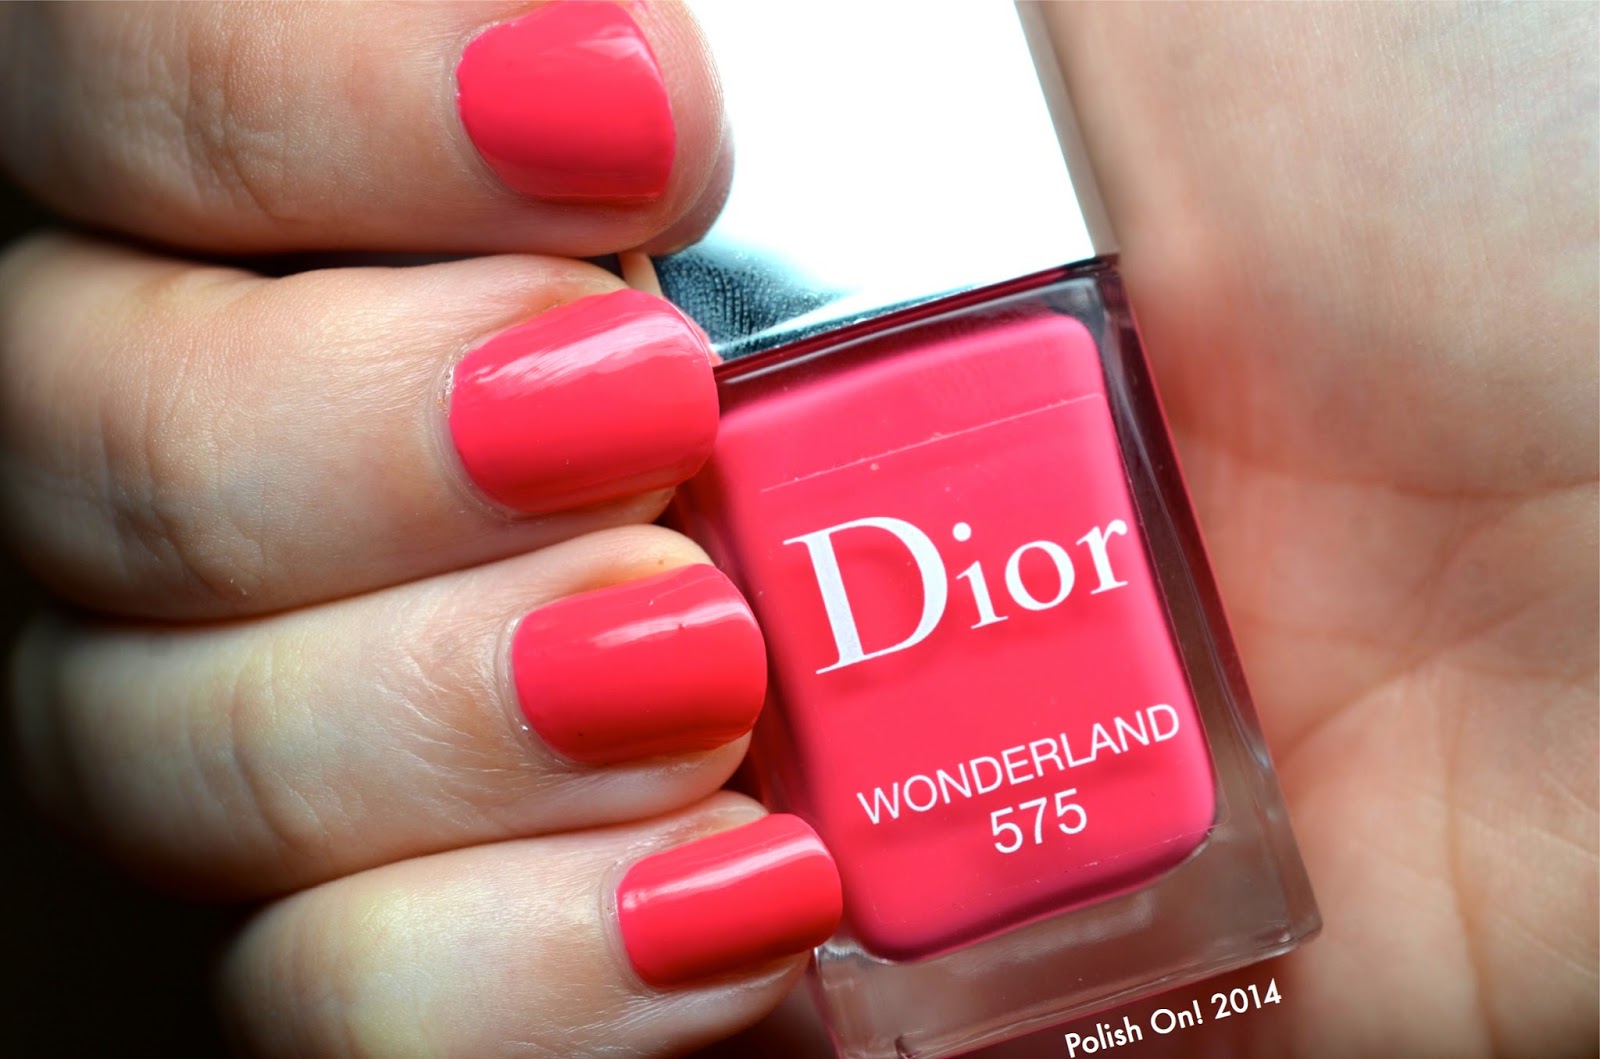 dior wonderland nail polish